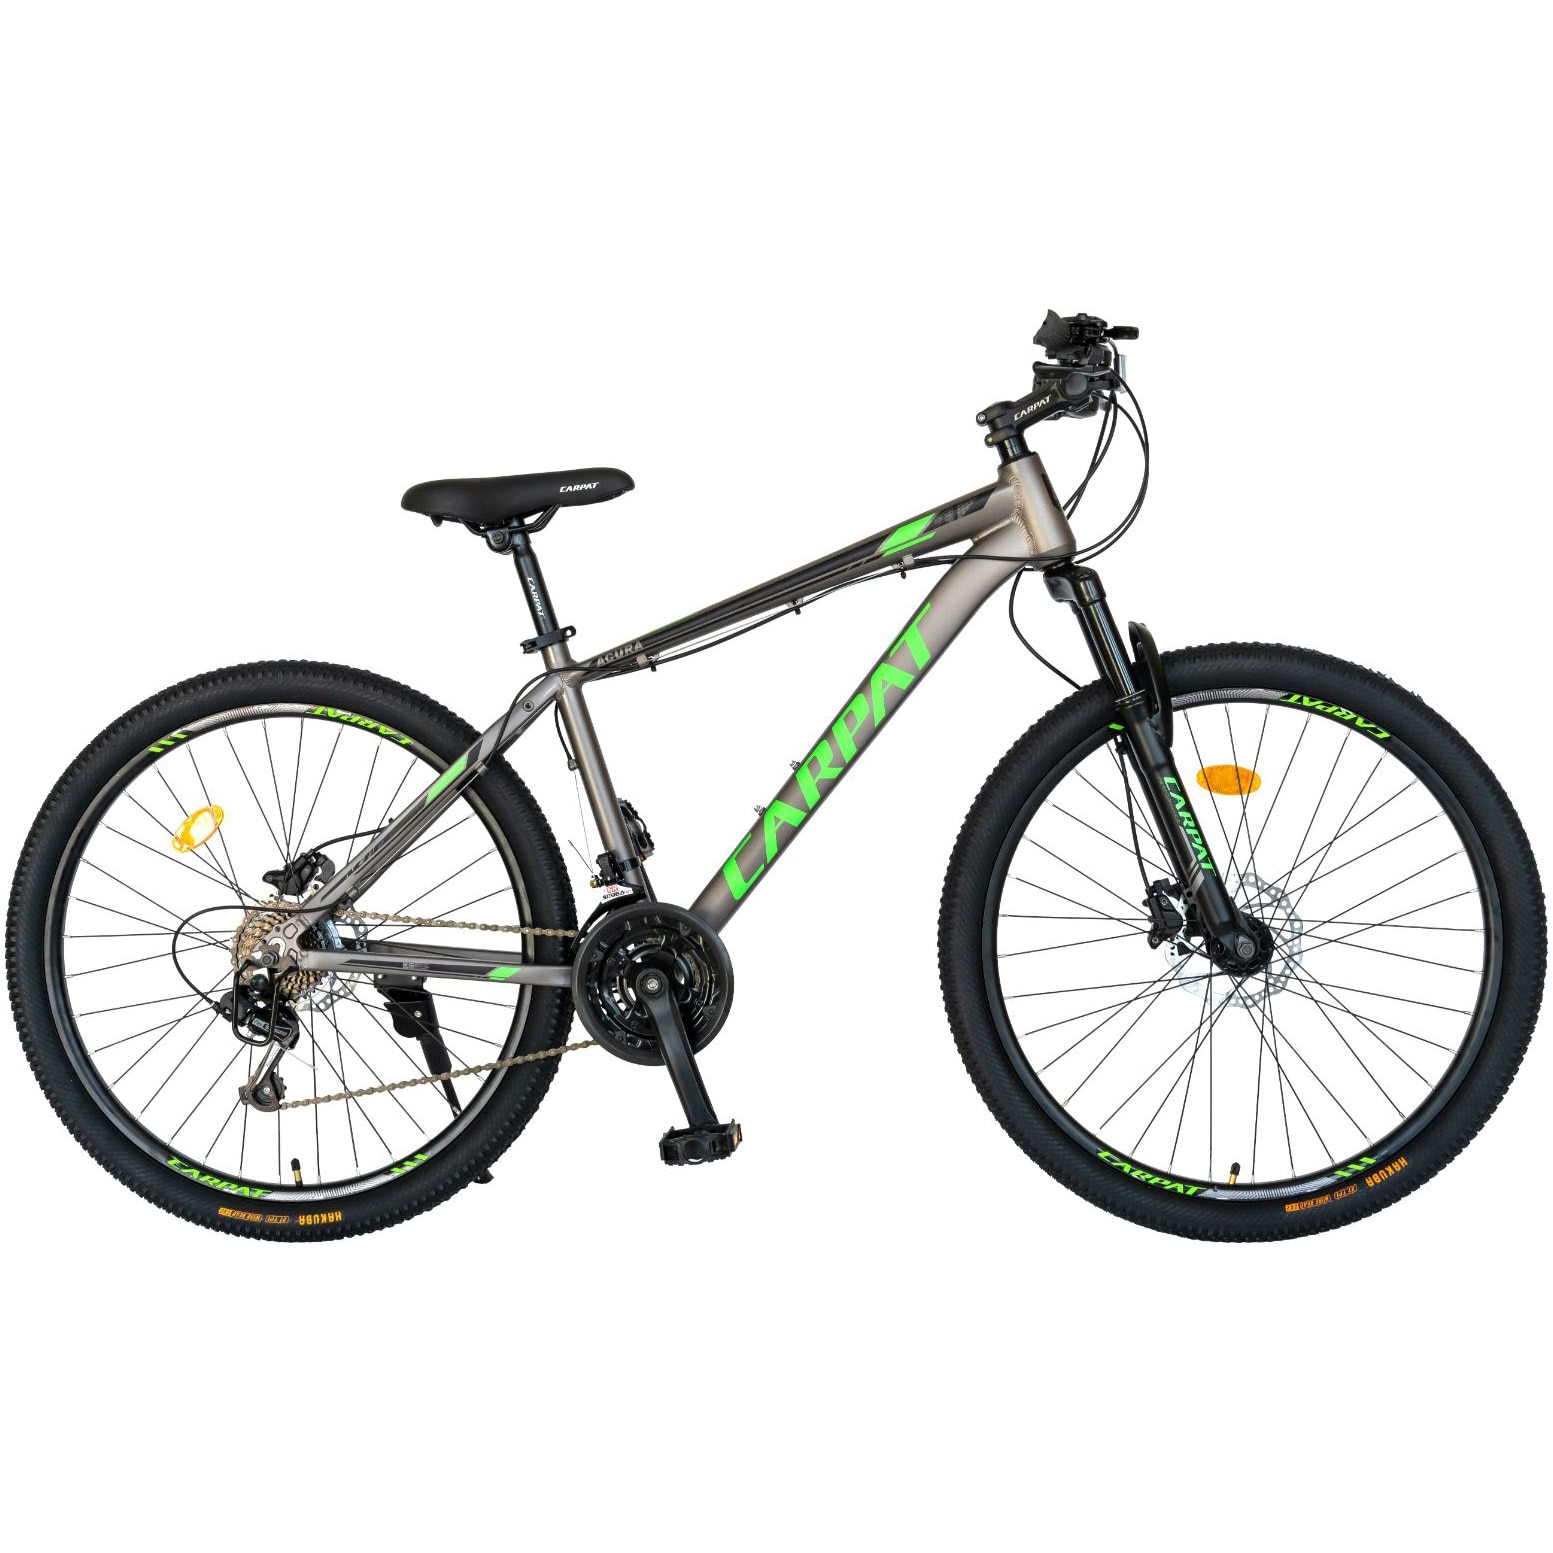 Fotografie Bicicleta MTB Carpat Acura C2799H, 27.5 inch, 21 viteze, cadru aluminiu, frane hidraulice, gri/negru/verde